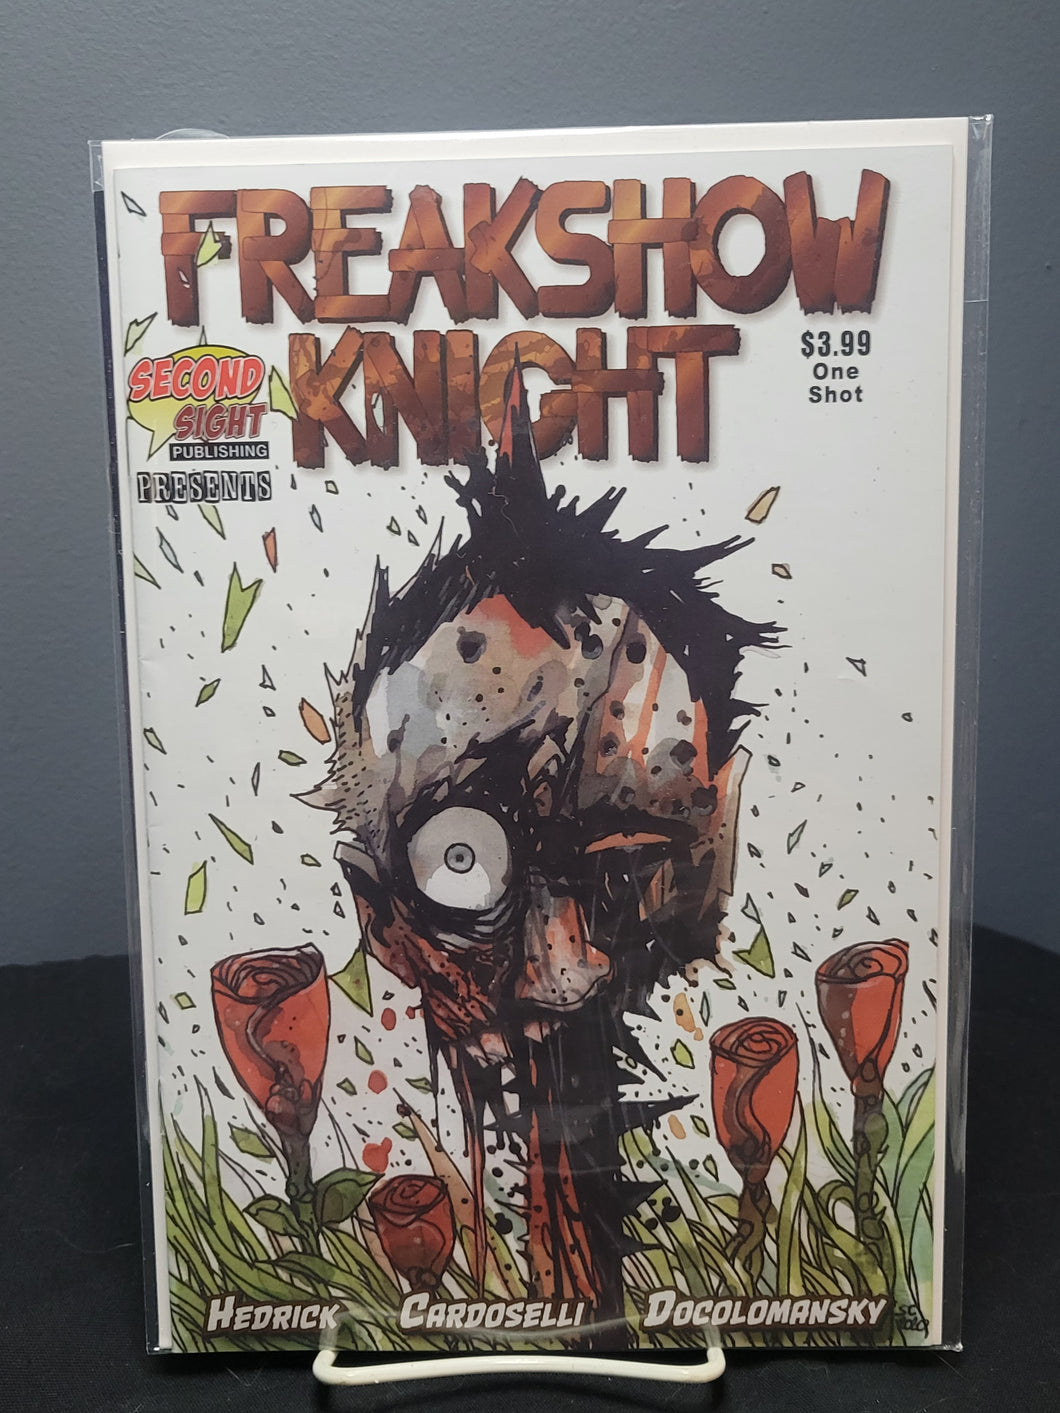 Freakshow Knight #1